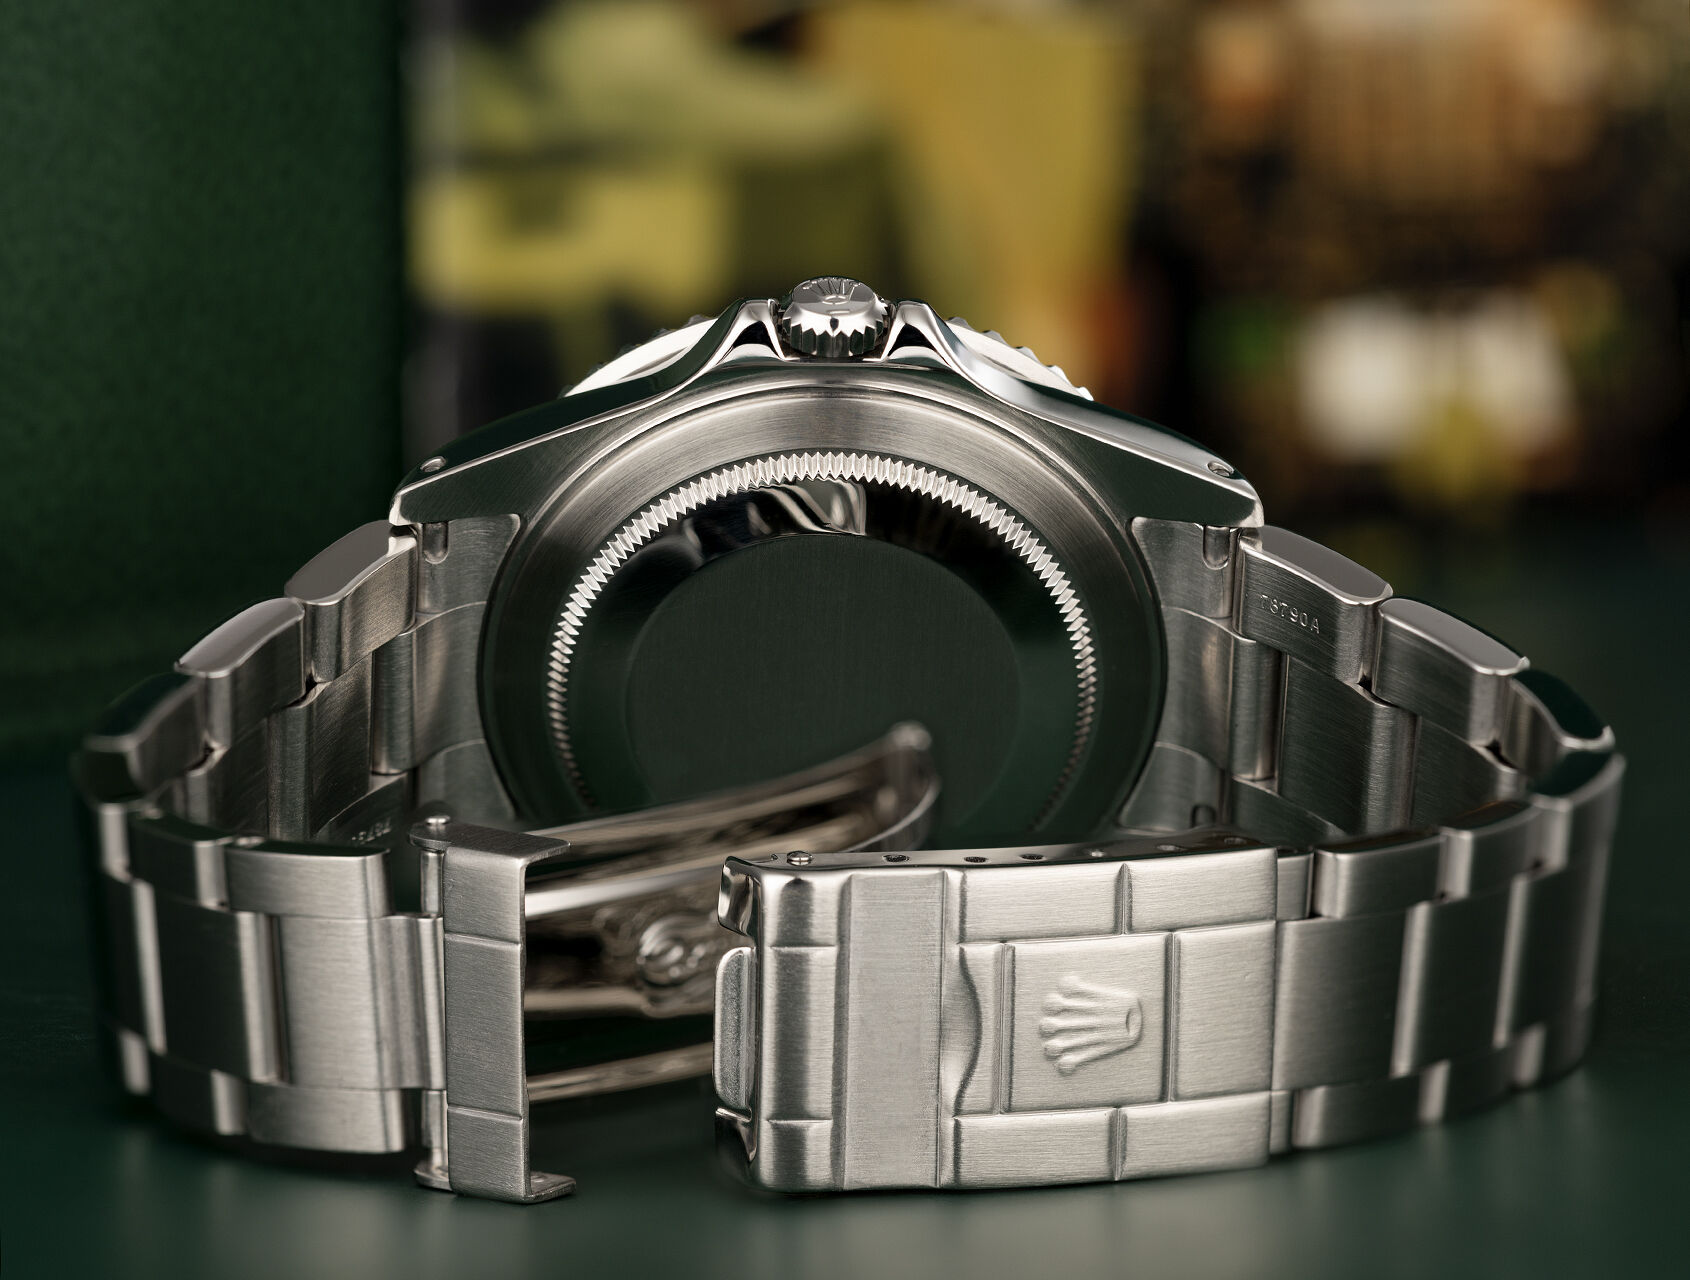 ref 16710 | 16710 - Box & Certificate | Rolex GMT-Master II